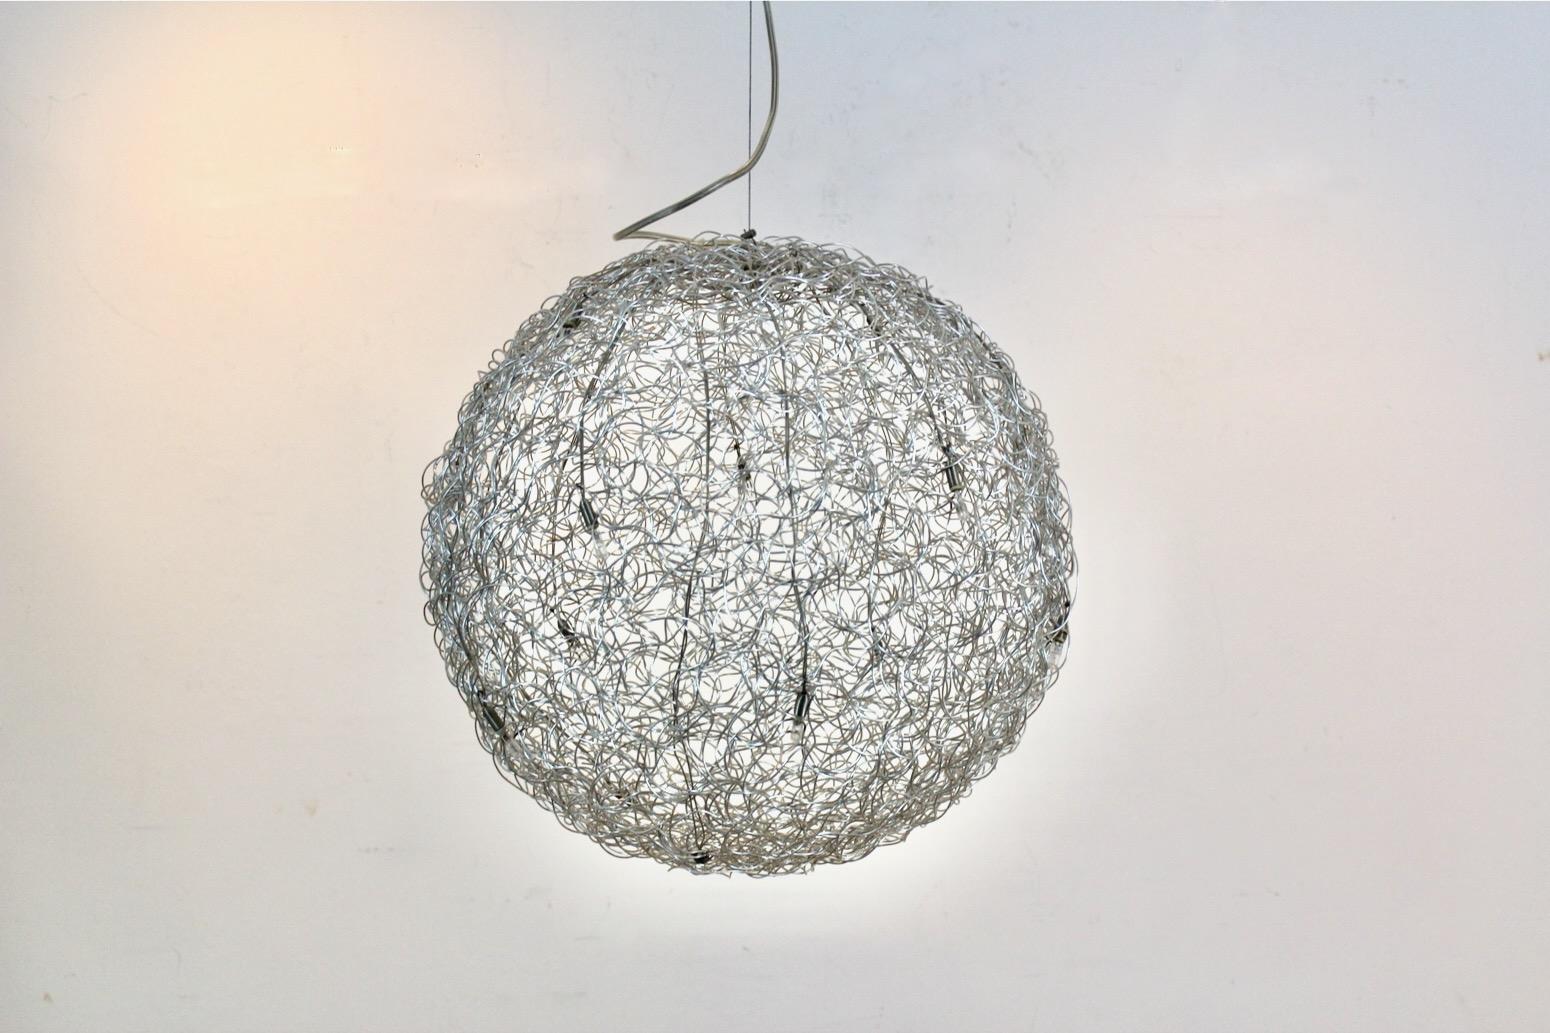 La magnifique suspension sculpturale 'Fil de Fer' est conçue par Catellani & Smith. Le Fil de Fer est un luminaire composé de fils d'aluminium façonnés et tressés, éclairés par de minuscules ampoules. Conçue et fabriquée par Enzo Catellani, c'est